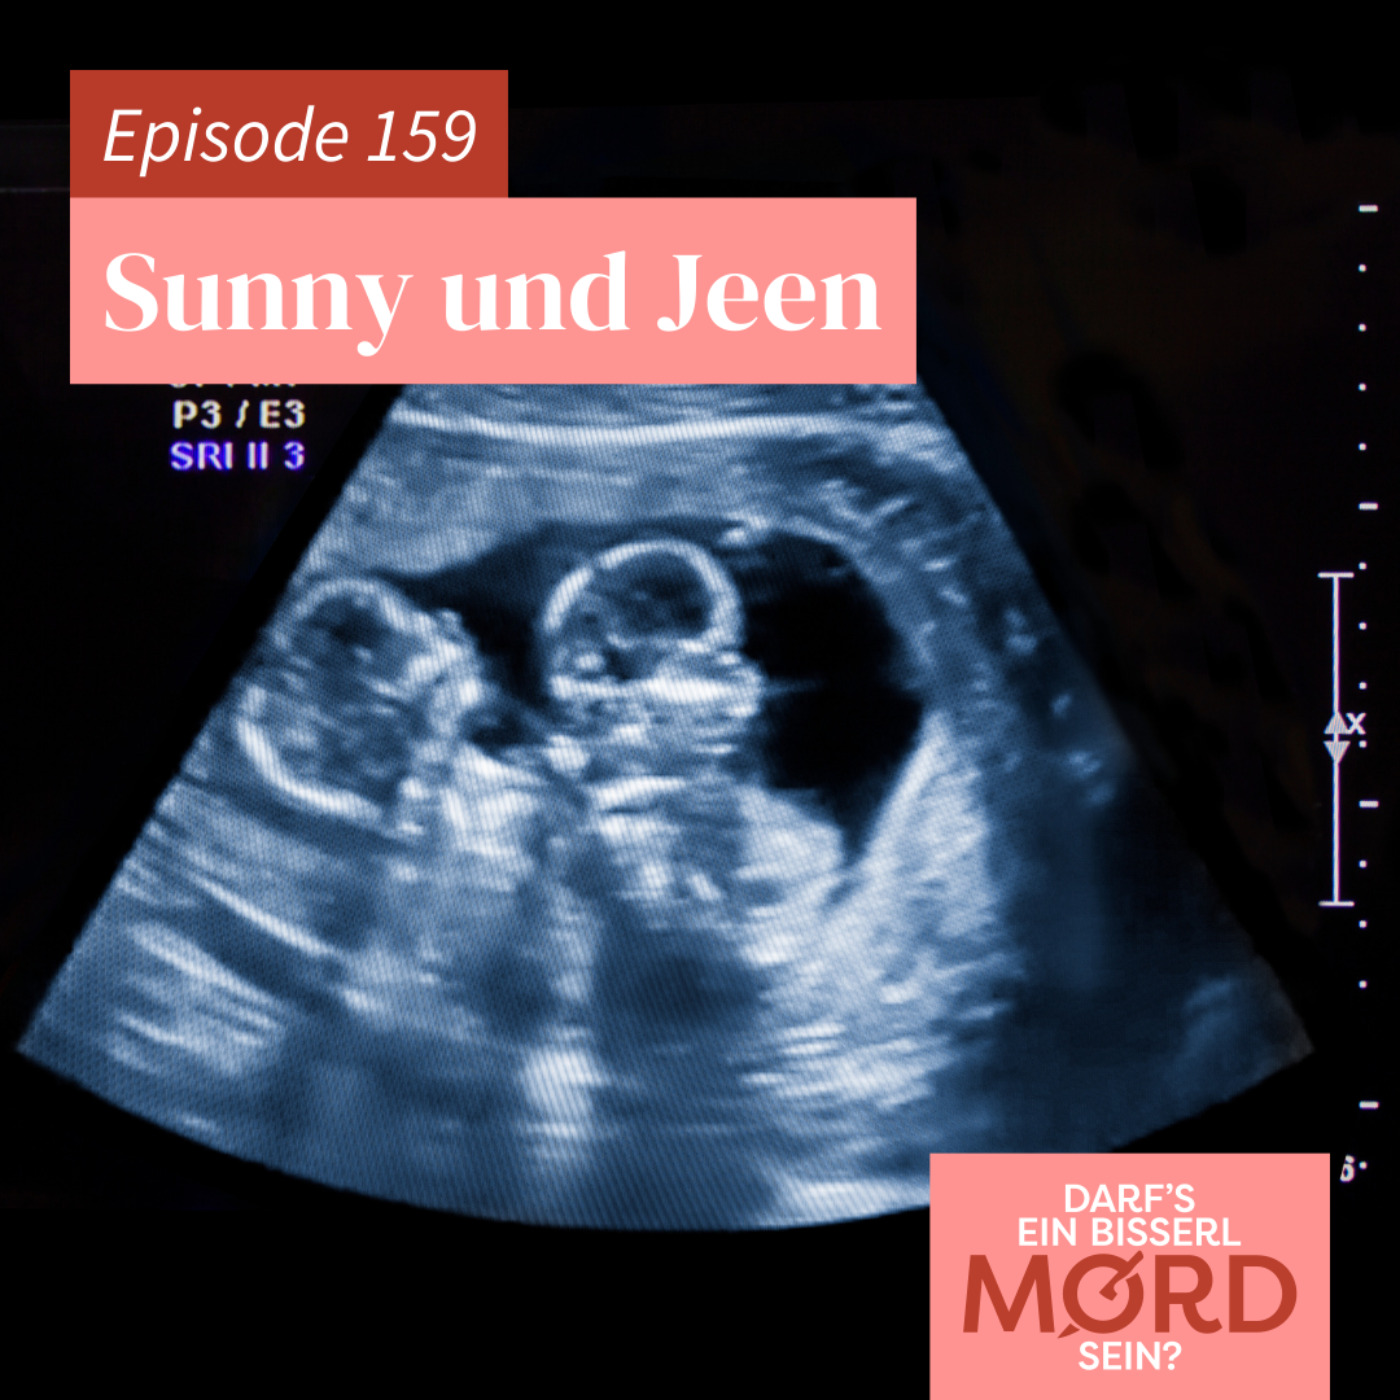 Episode 159: Sunny und Jeen